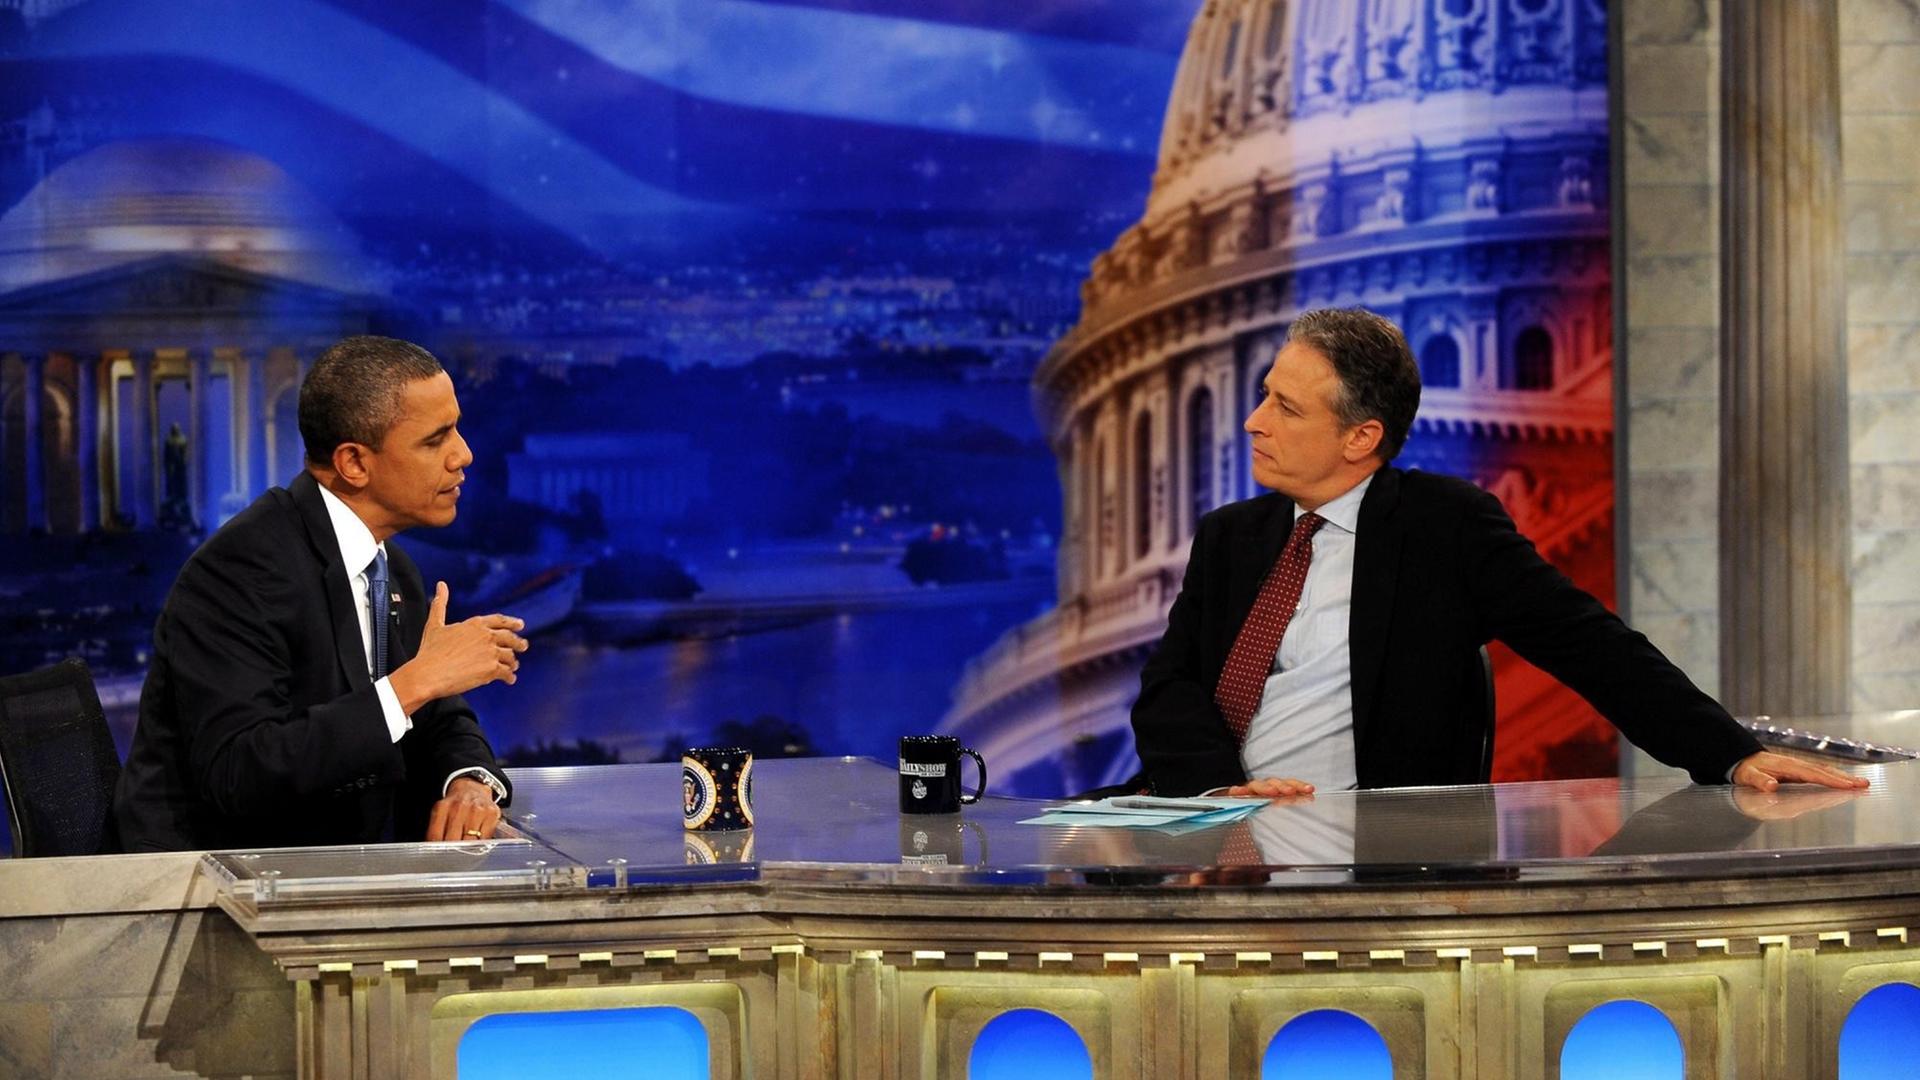 US-Präsident Barack Obama (l) als Gast in der "Daily Show" von Talkmaster Jon Stewart während einer Werbepause